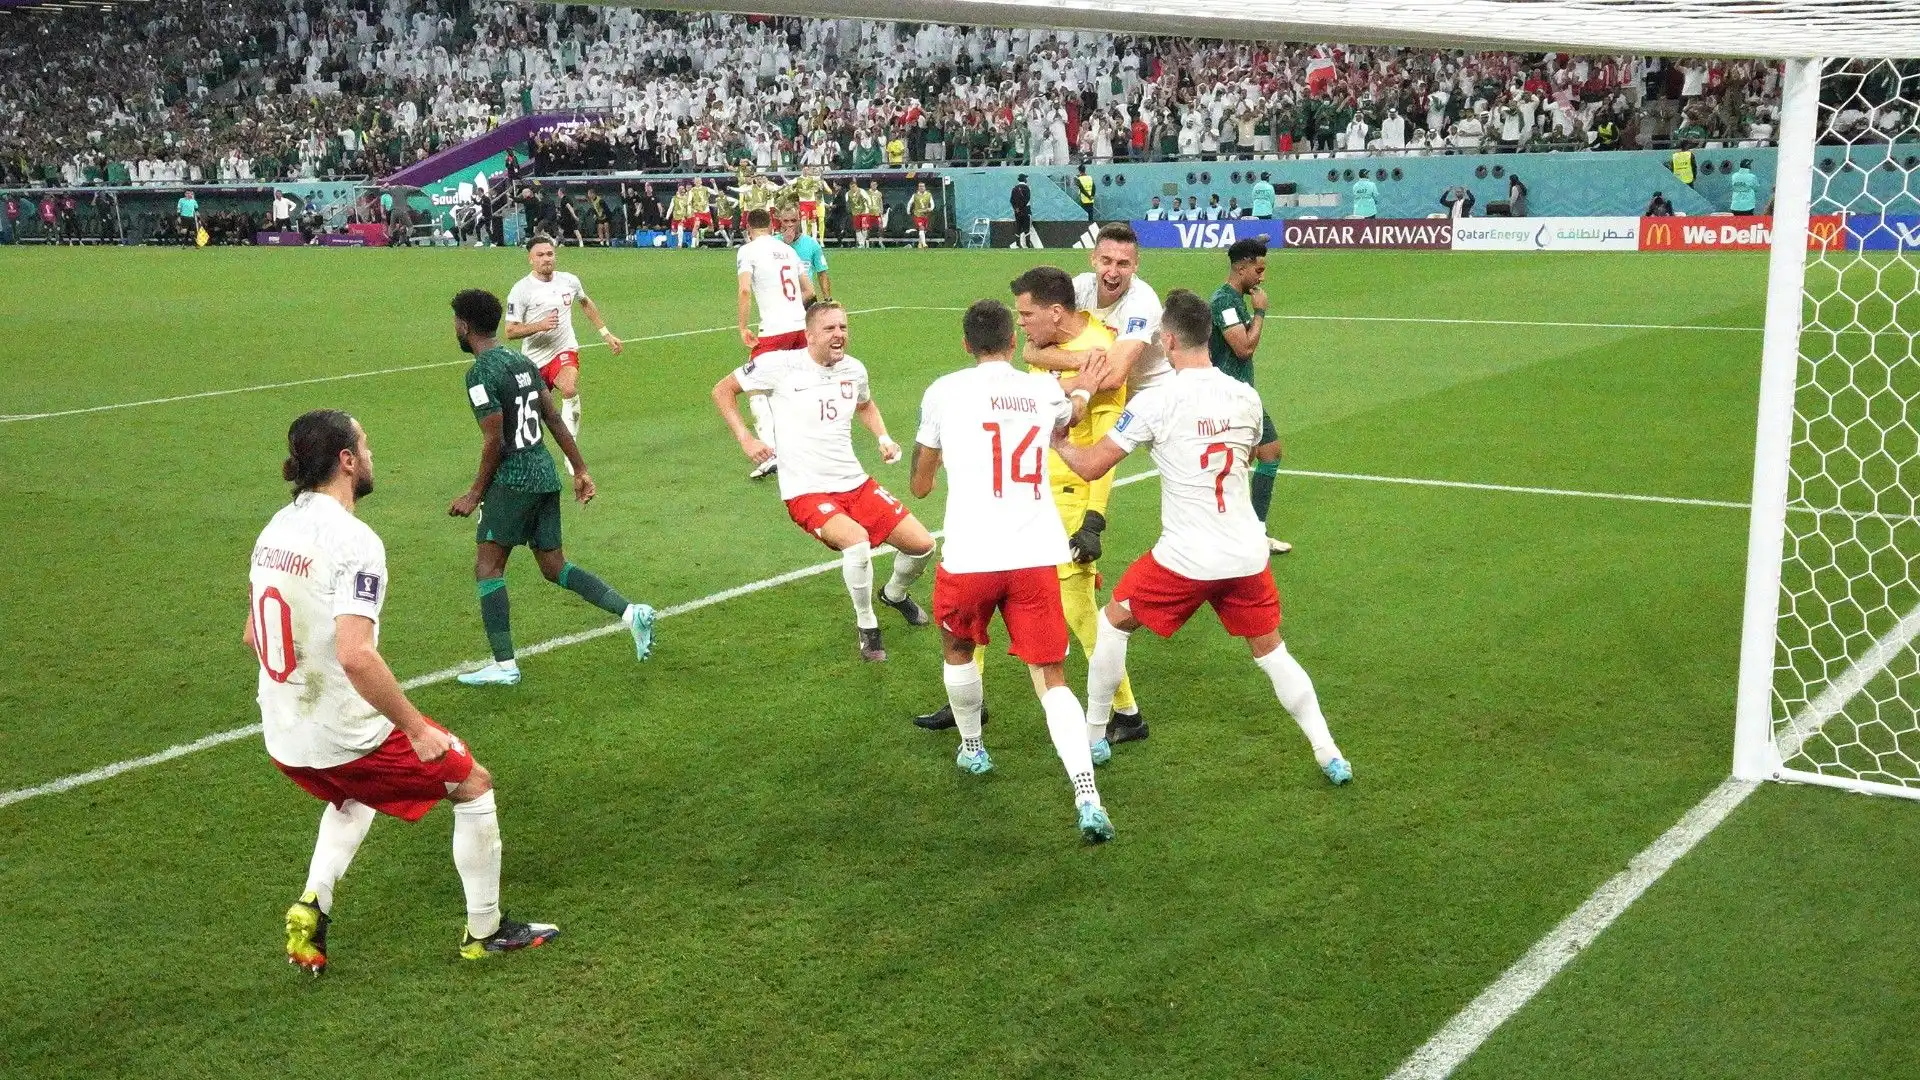 La Polonia ha poi vinto la partita